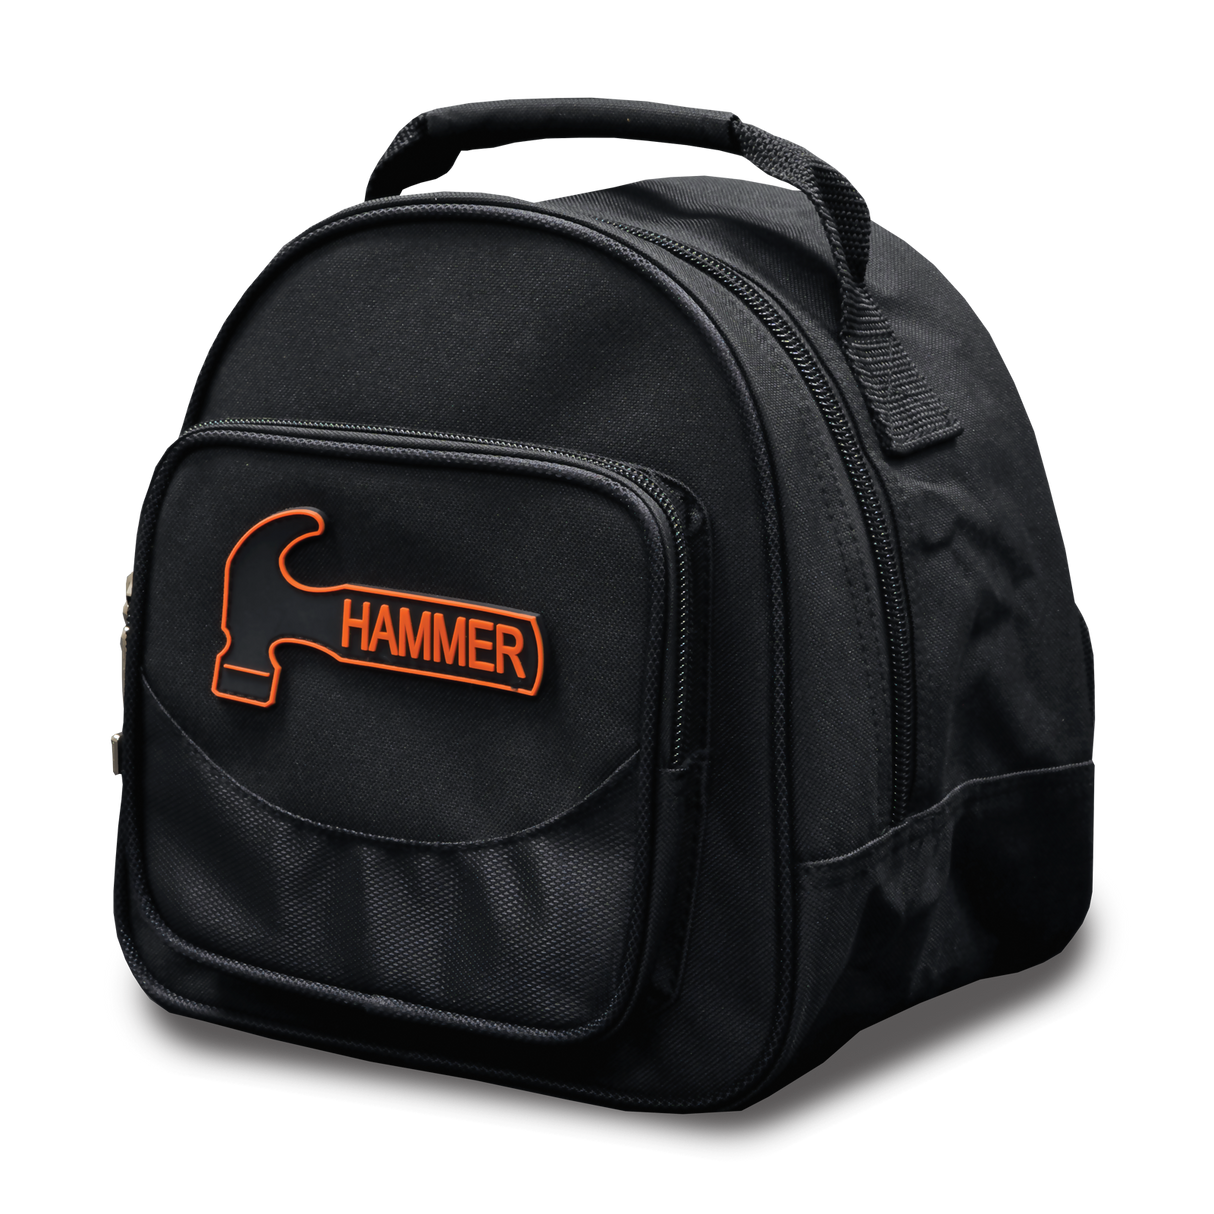 Hammer Plus 1 Black Single Tote Bowling Bag suitcase league tournament play sale discount coupon online pba tour